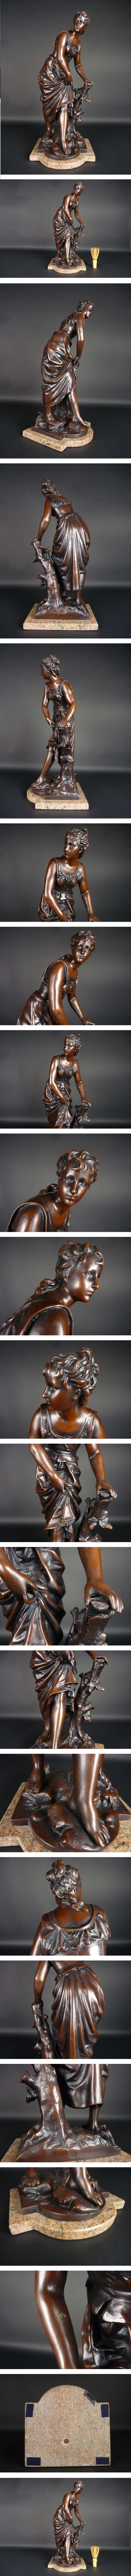 割引コー銅製 女性像 高さ 約46㎝ 幅 約20㎝ ブロンズ像 台座付 置物 その他